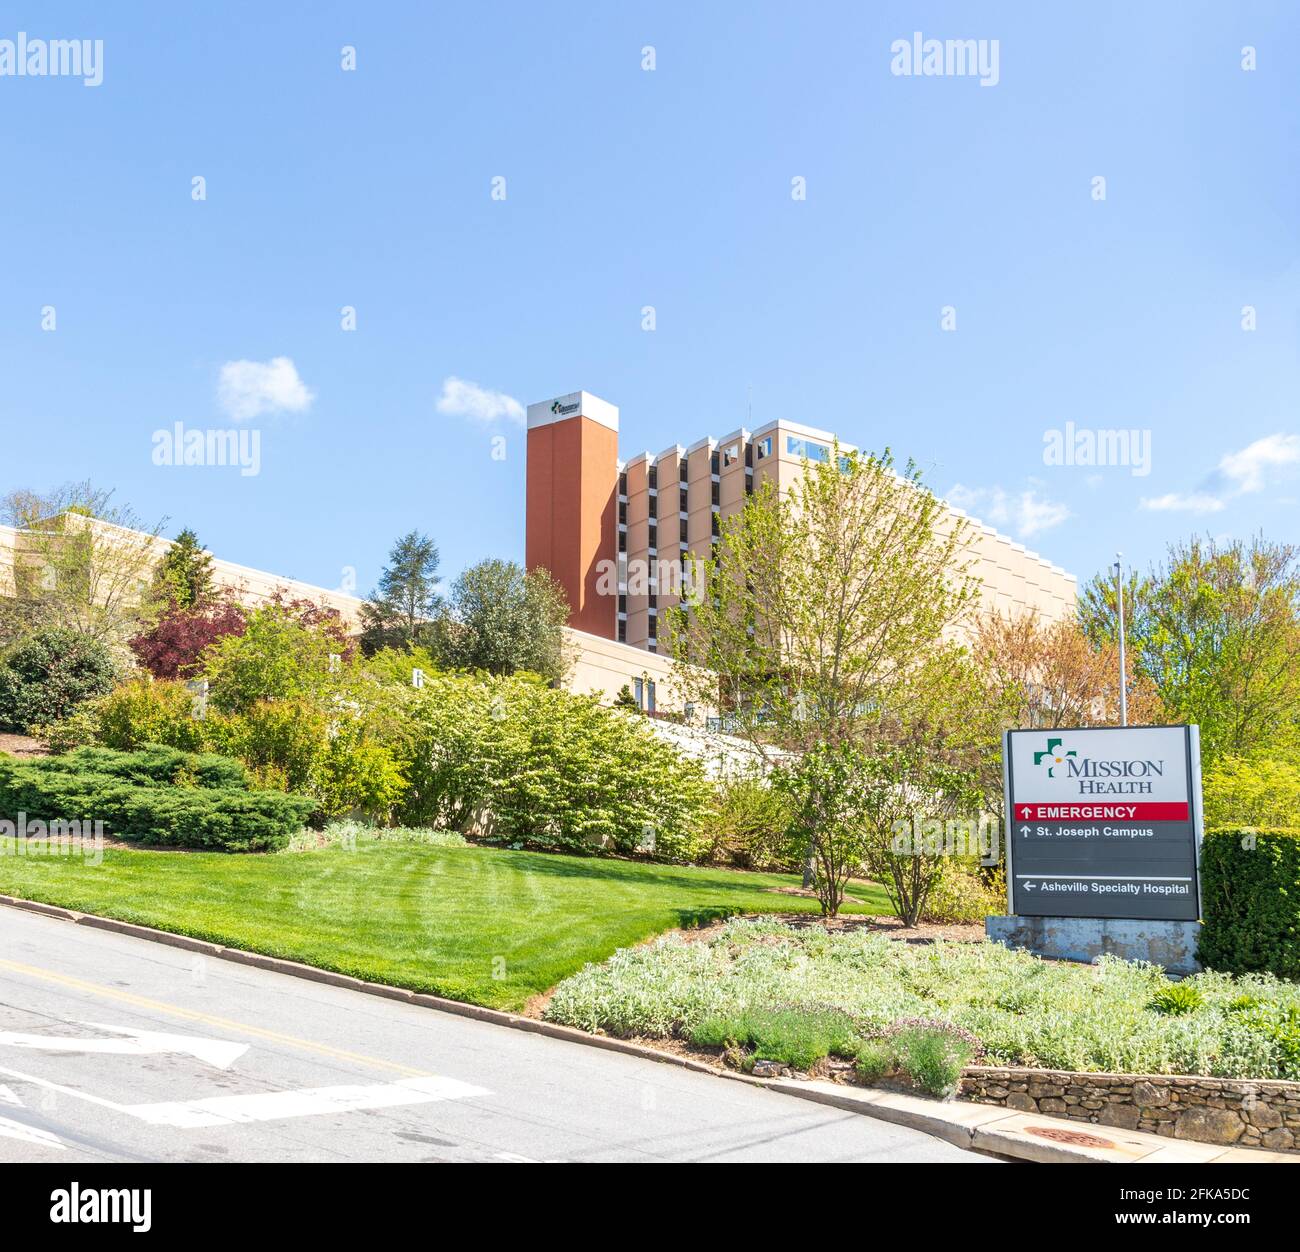 ASHEVILLE, NC, USA-25 APRILE 2021: Ingresso di emergenza della Salute della Missione, campus di St. Joseph, Asheville Specialty Hospital. Cartello informativo e edificio. Foto Stock